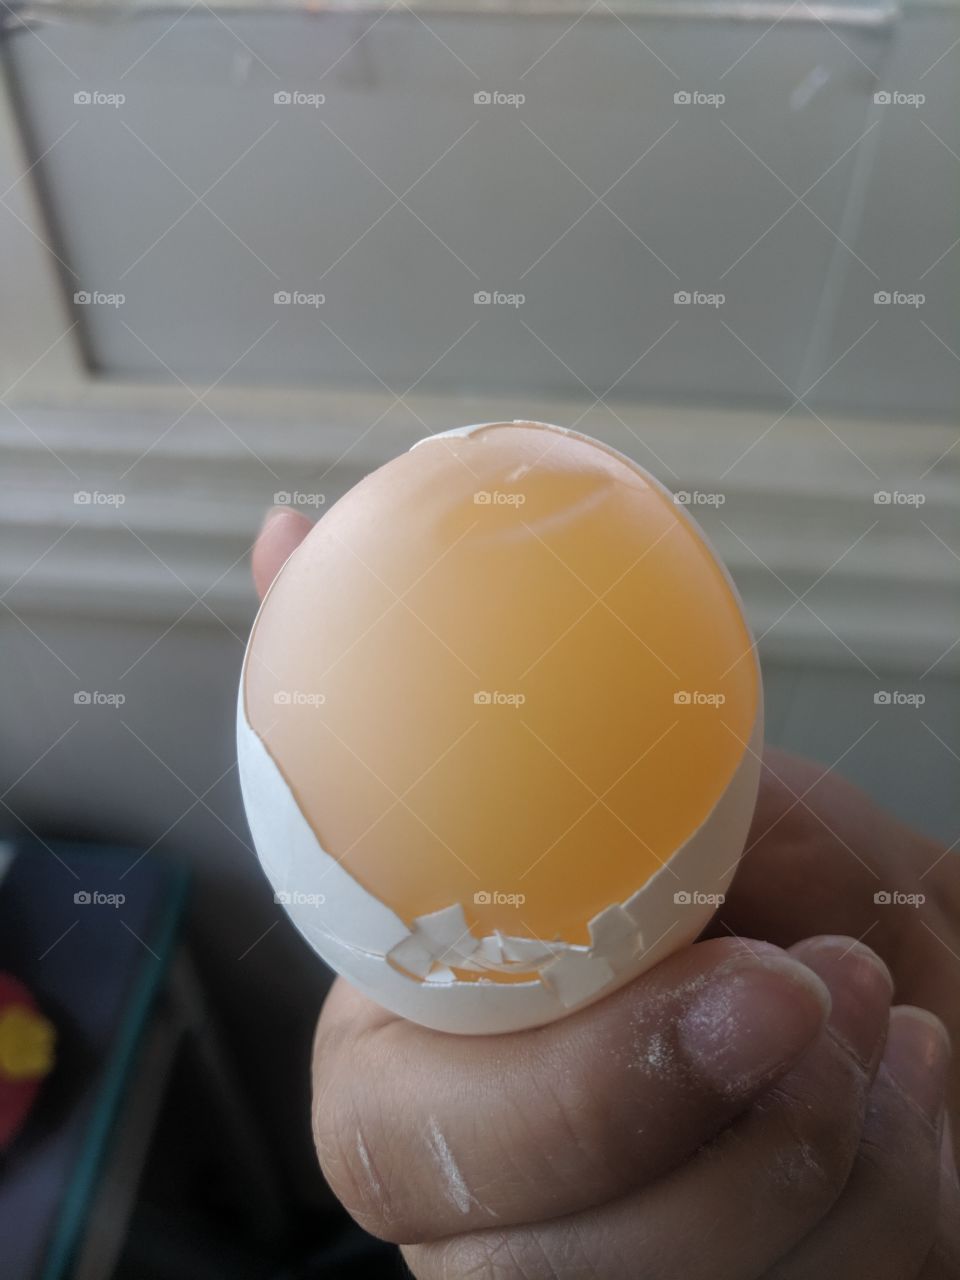 inside egg view